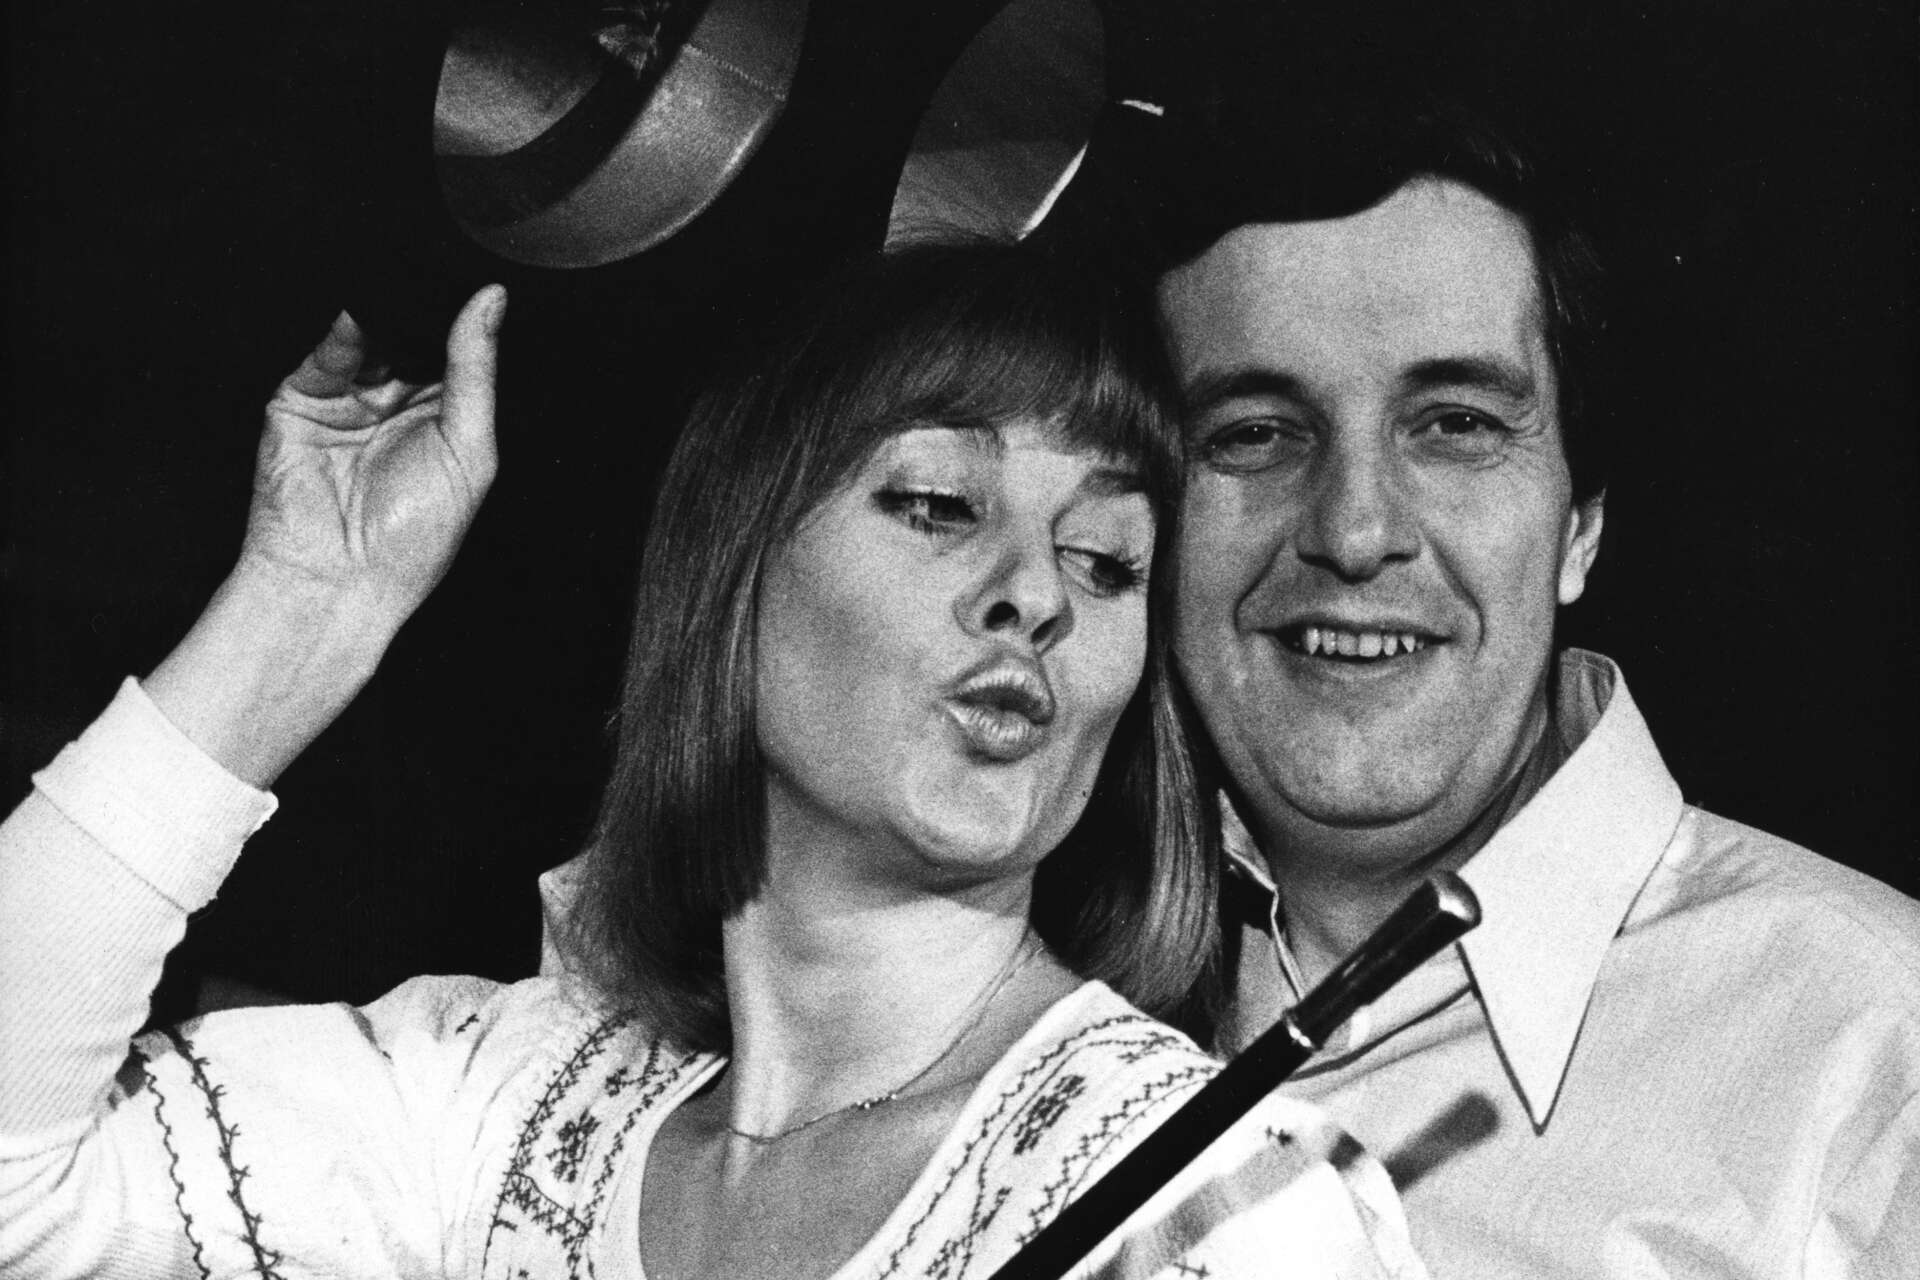 Eva Bysing och Bert-Åke Varg i samband med krogshowen 'Fint som snus' i Malmö 1973, som tidigare var en populär TV-serie på SVT.